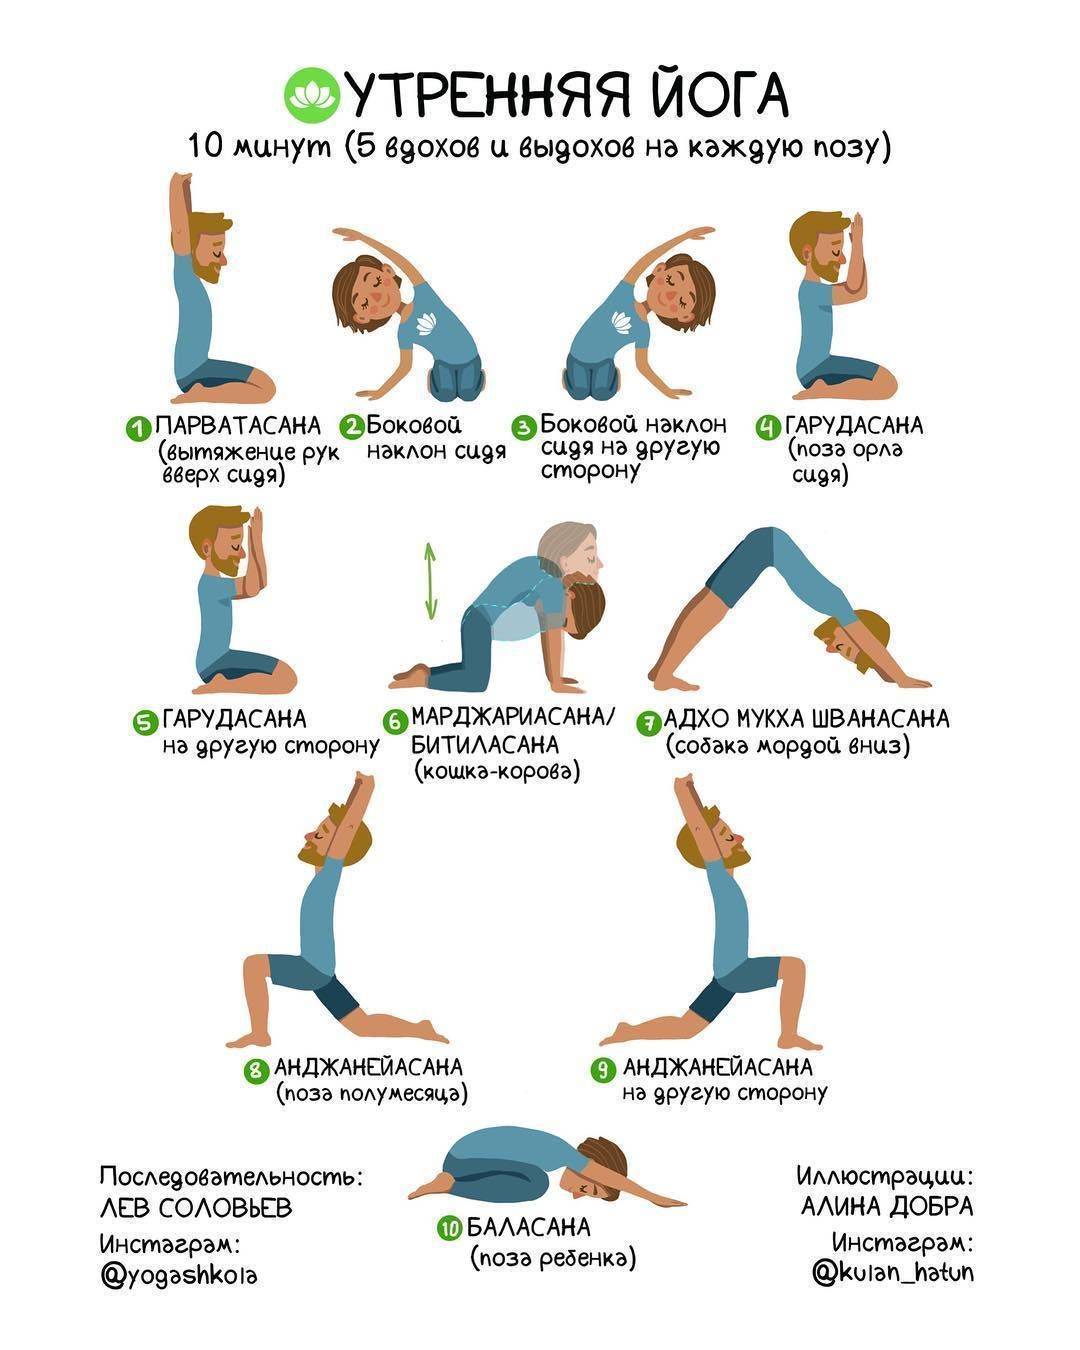 Топ рекомендаций с чего начать йогу - сколько раз в неделю нужно заниматься и питание при занятиях